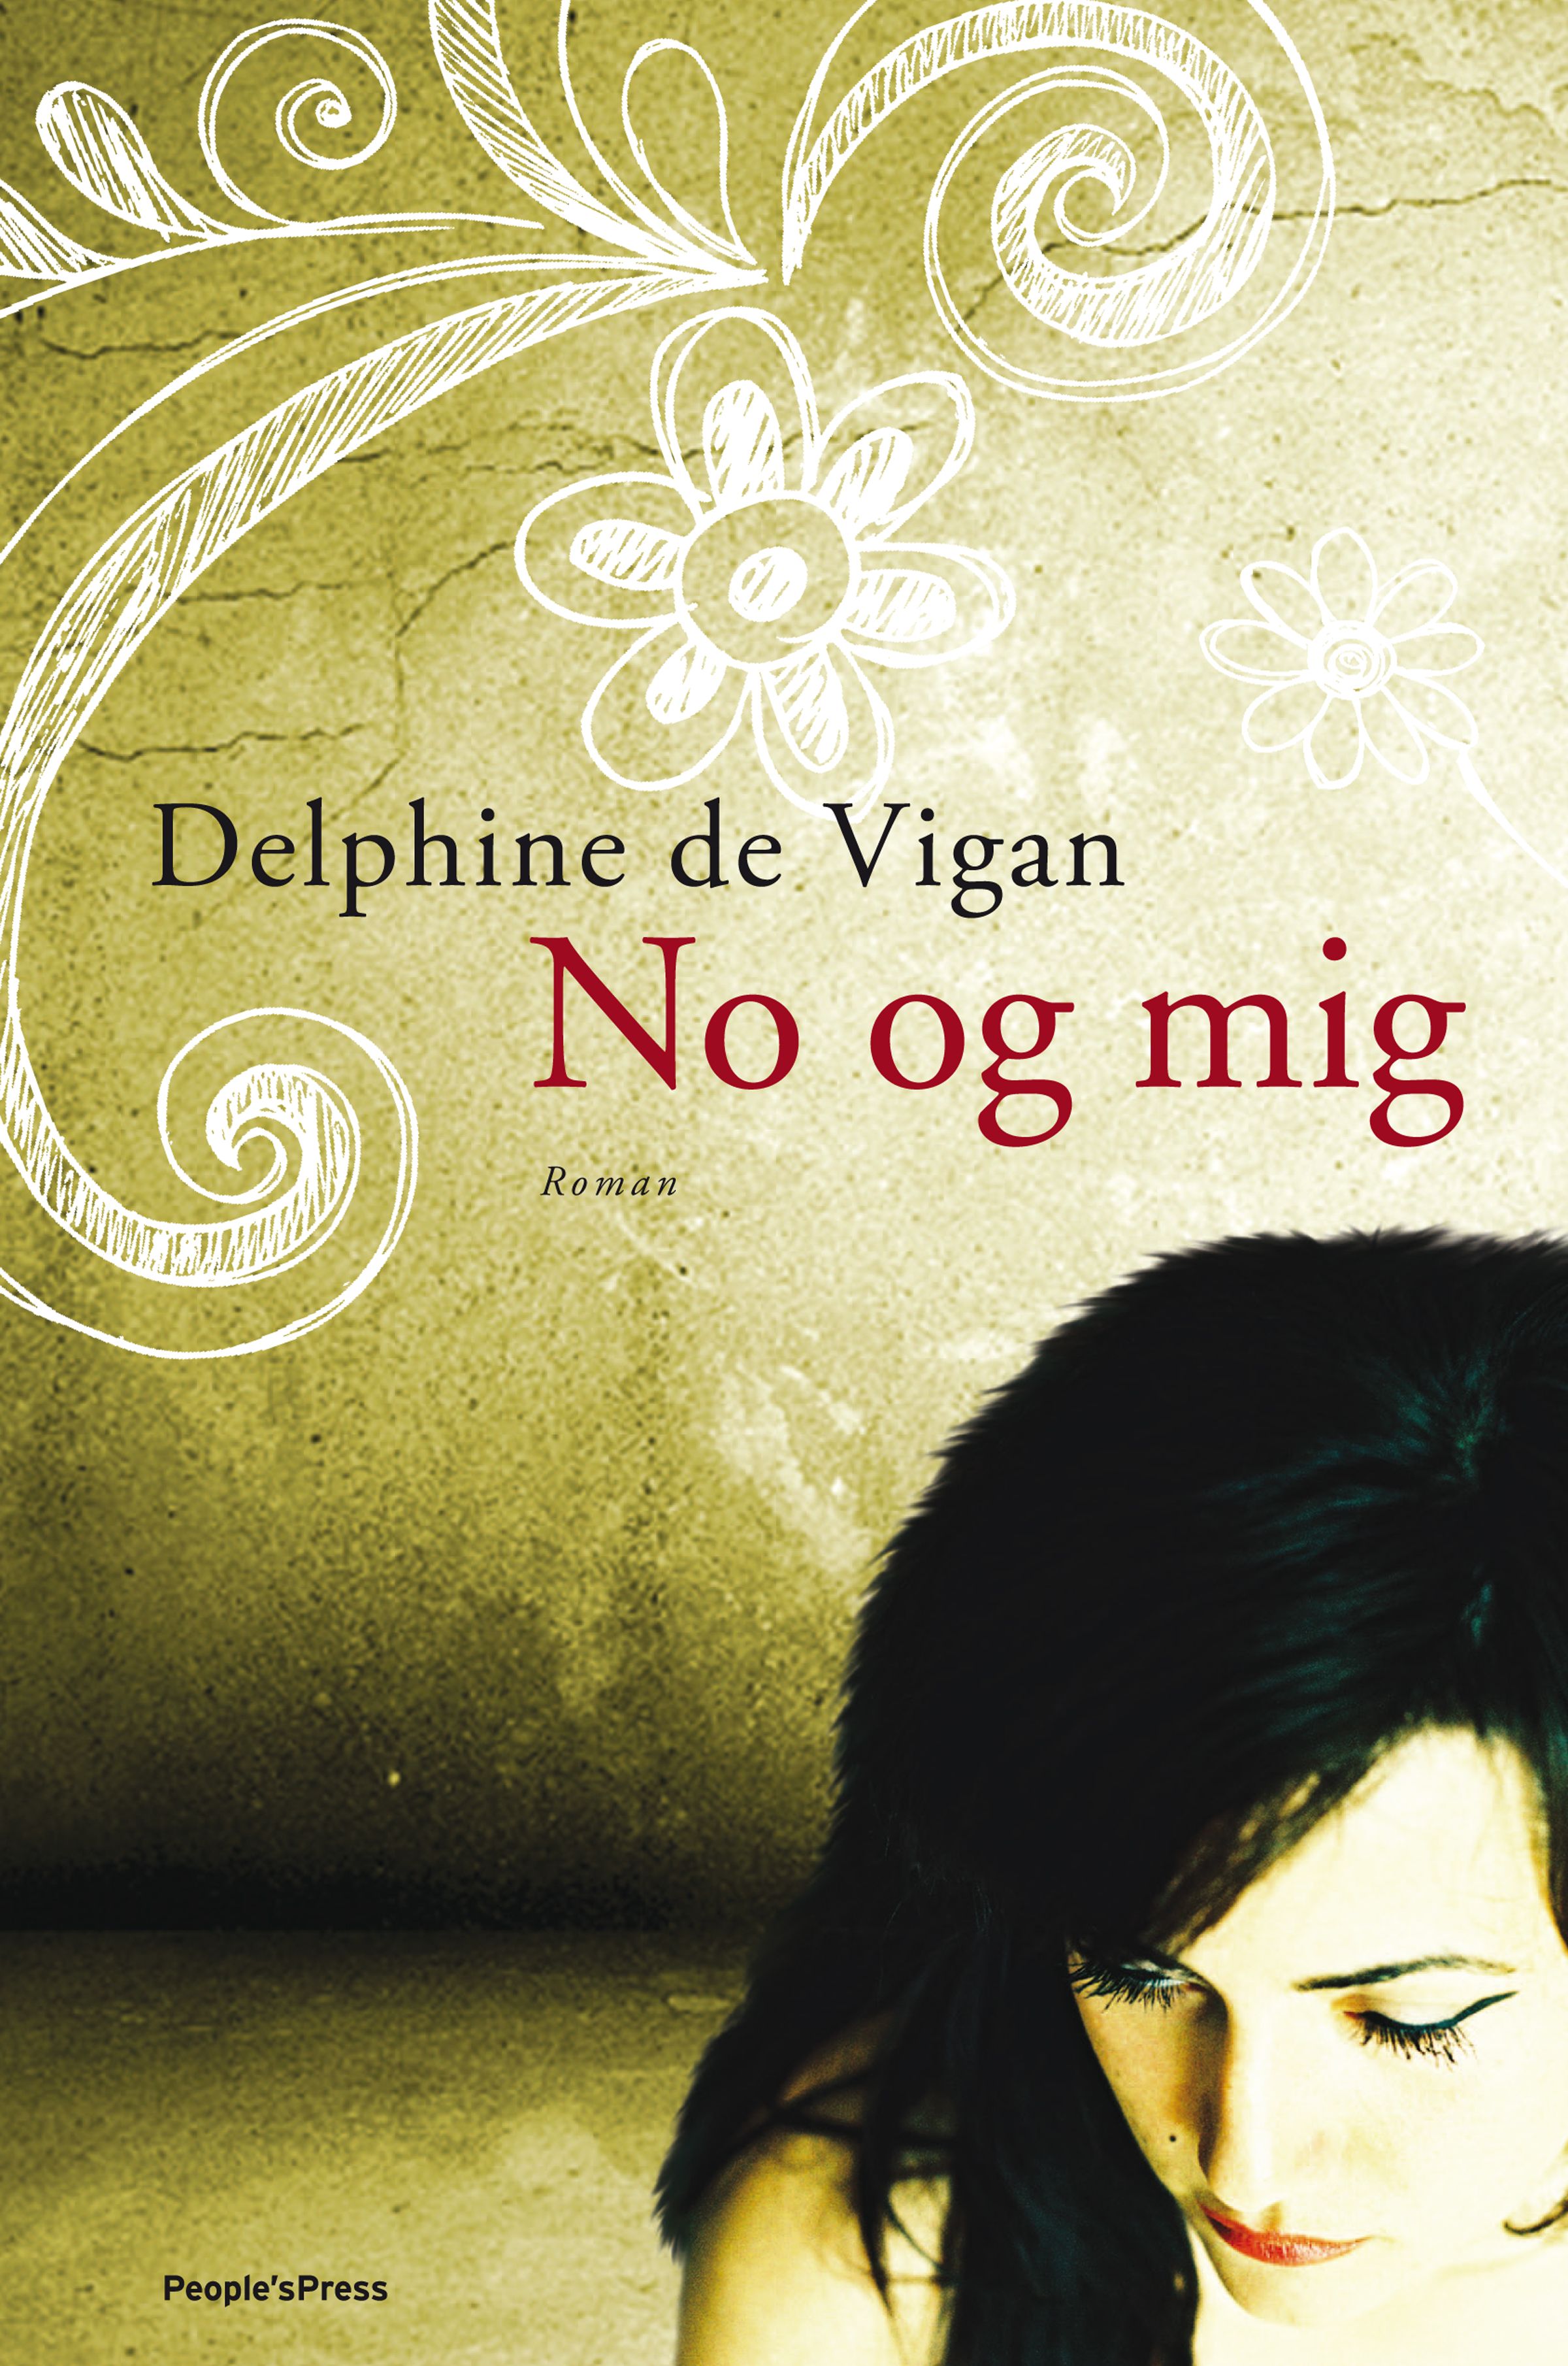 No og mig, eBook by Delphine De Vigan